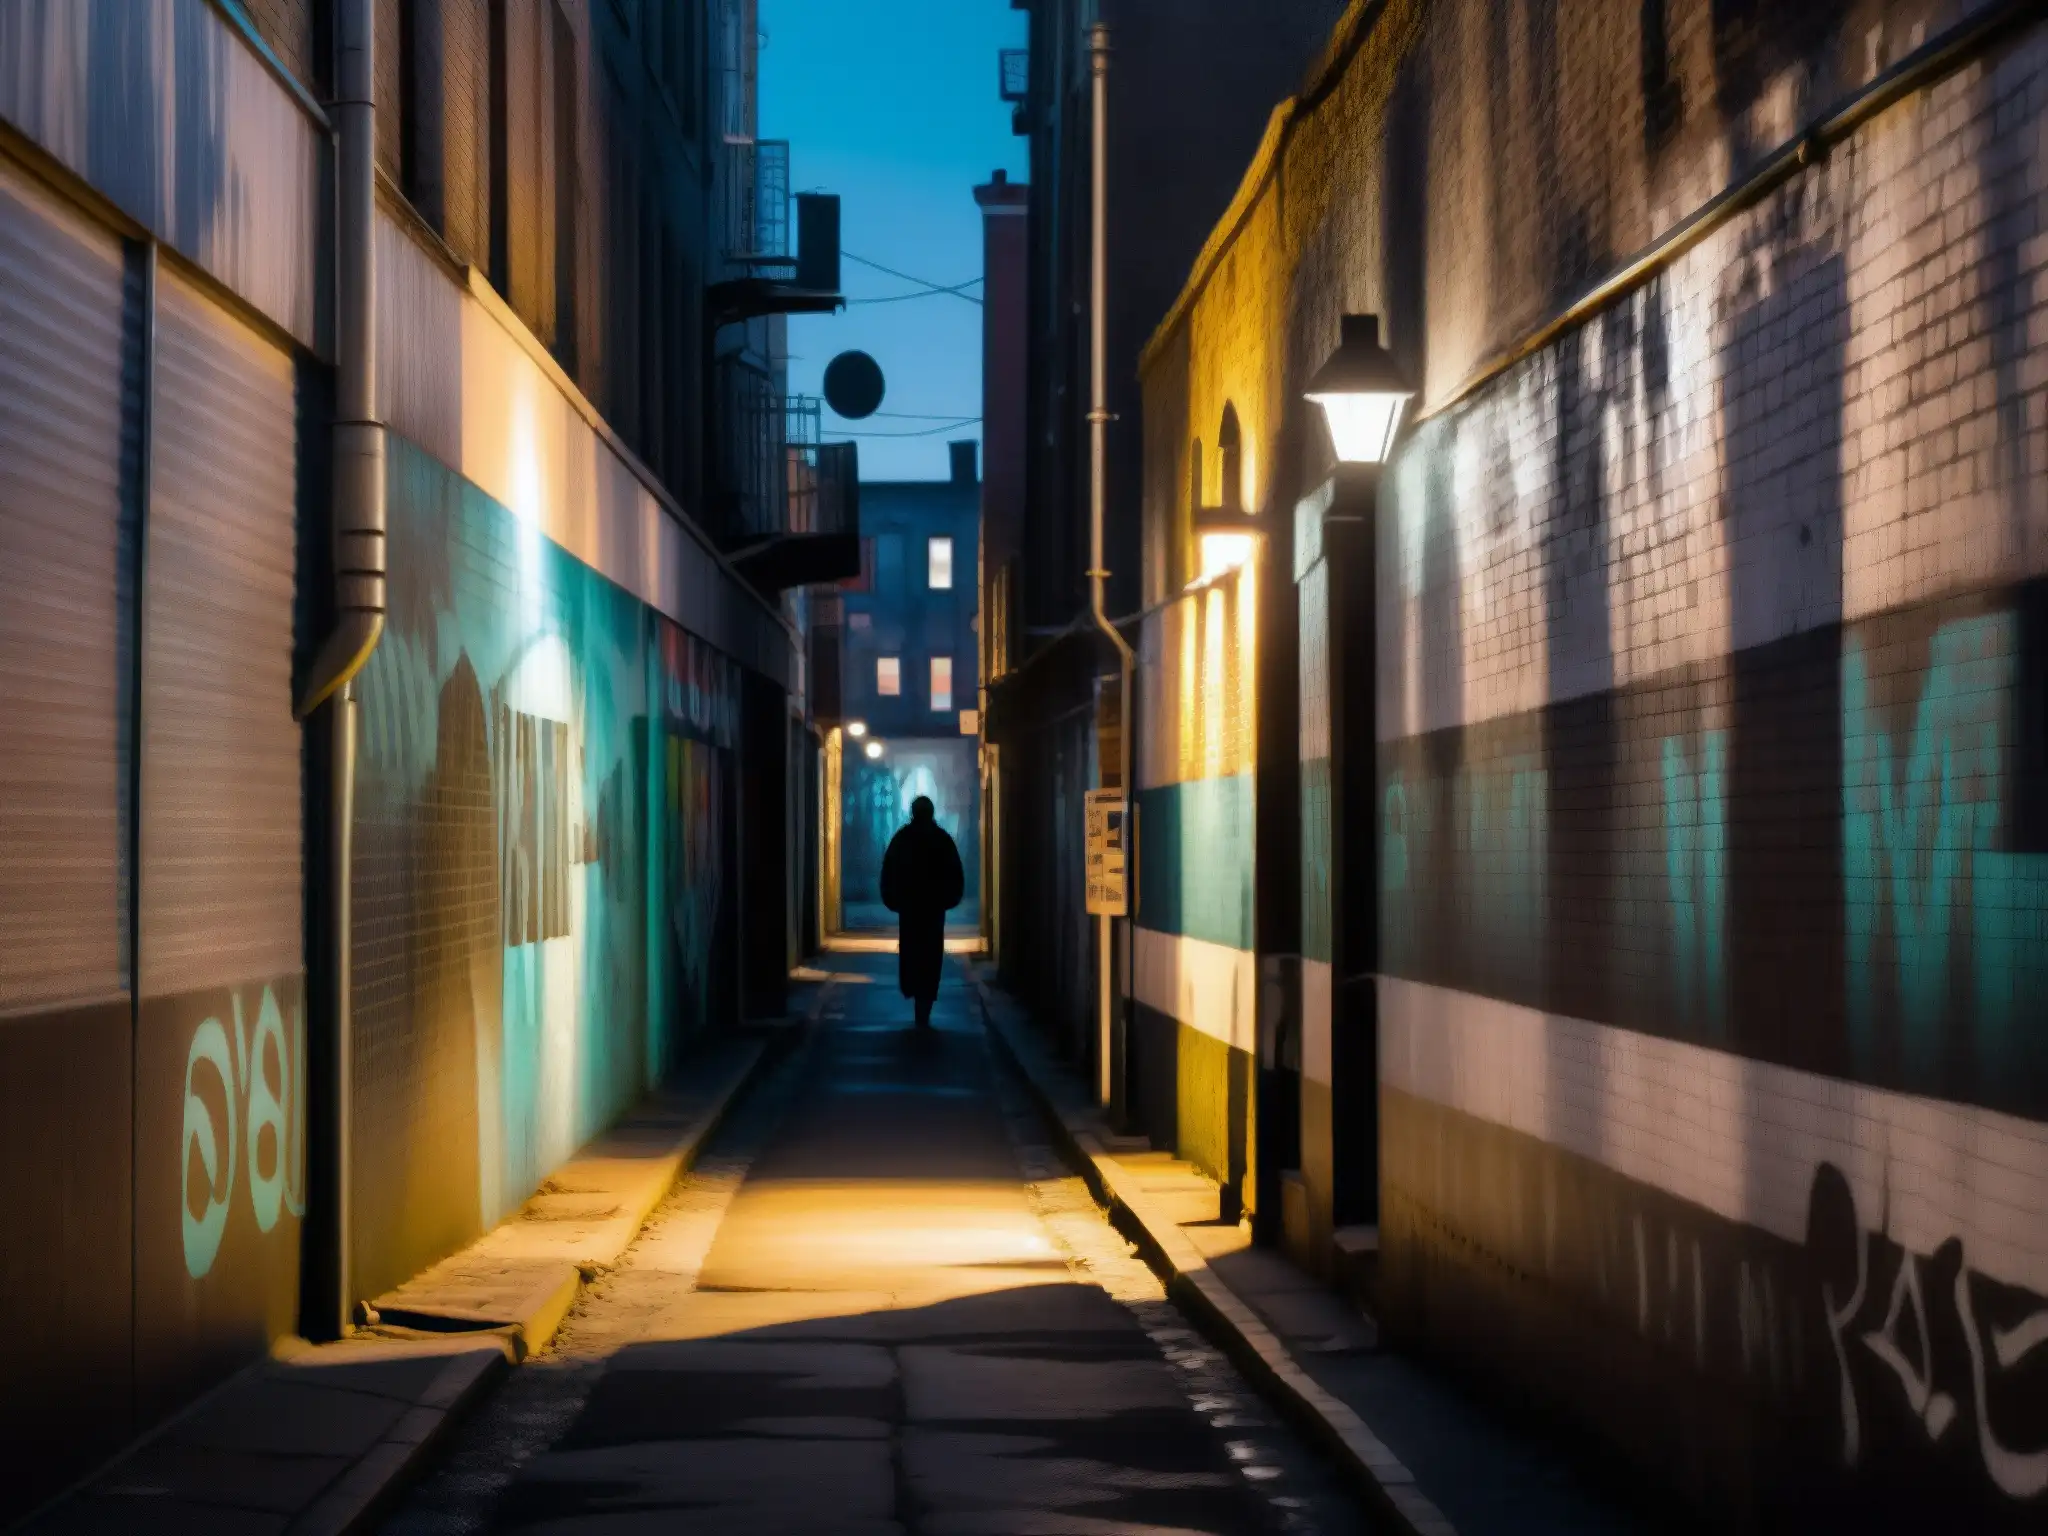 Un callejón urbano iluminado tenue con murales de graffiti y una figura solitaria al final